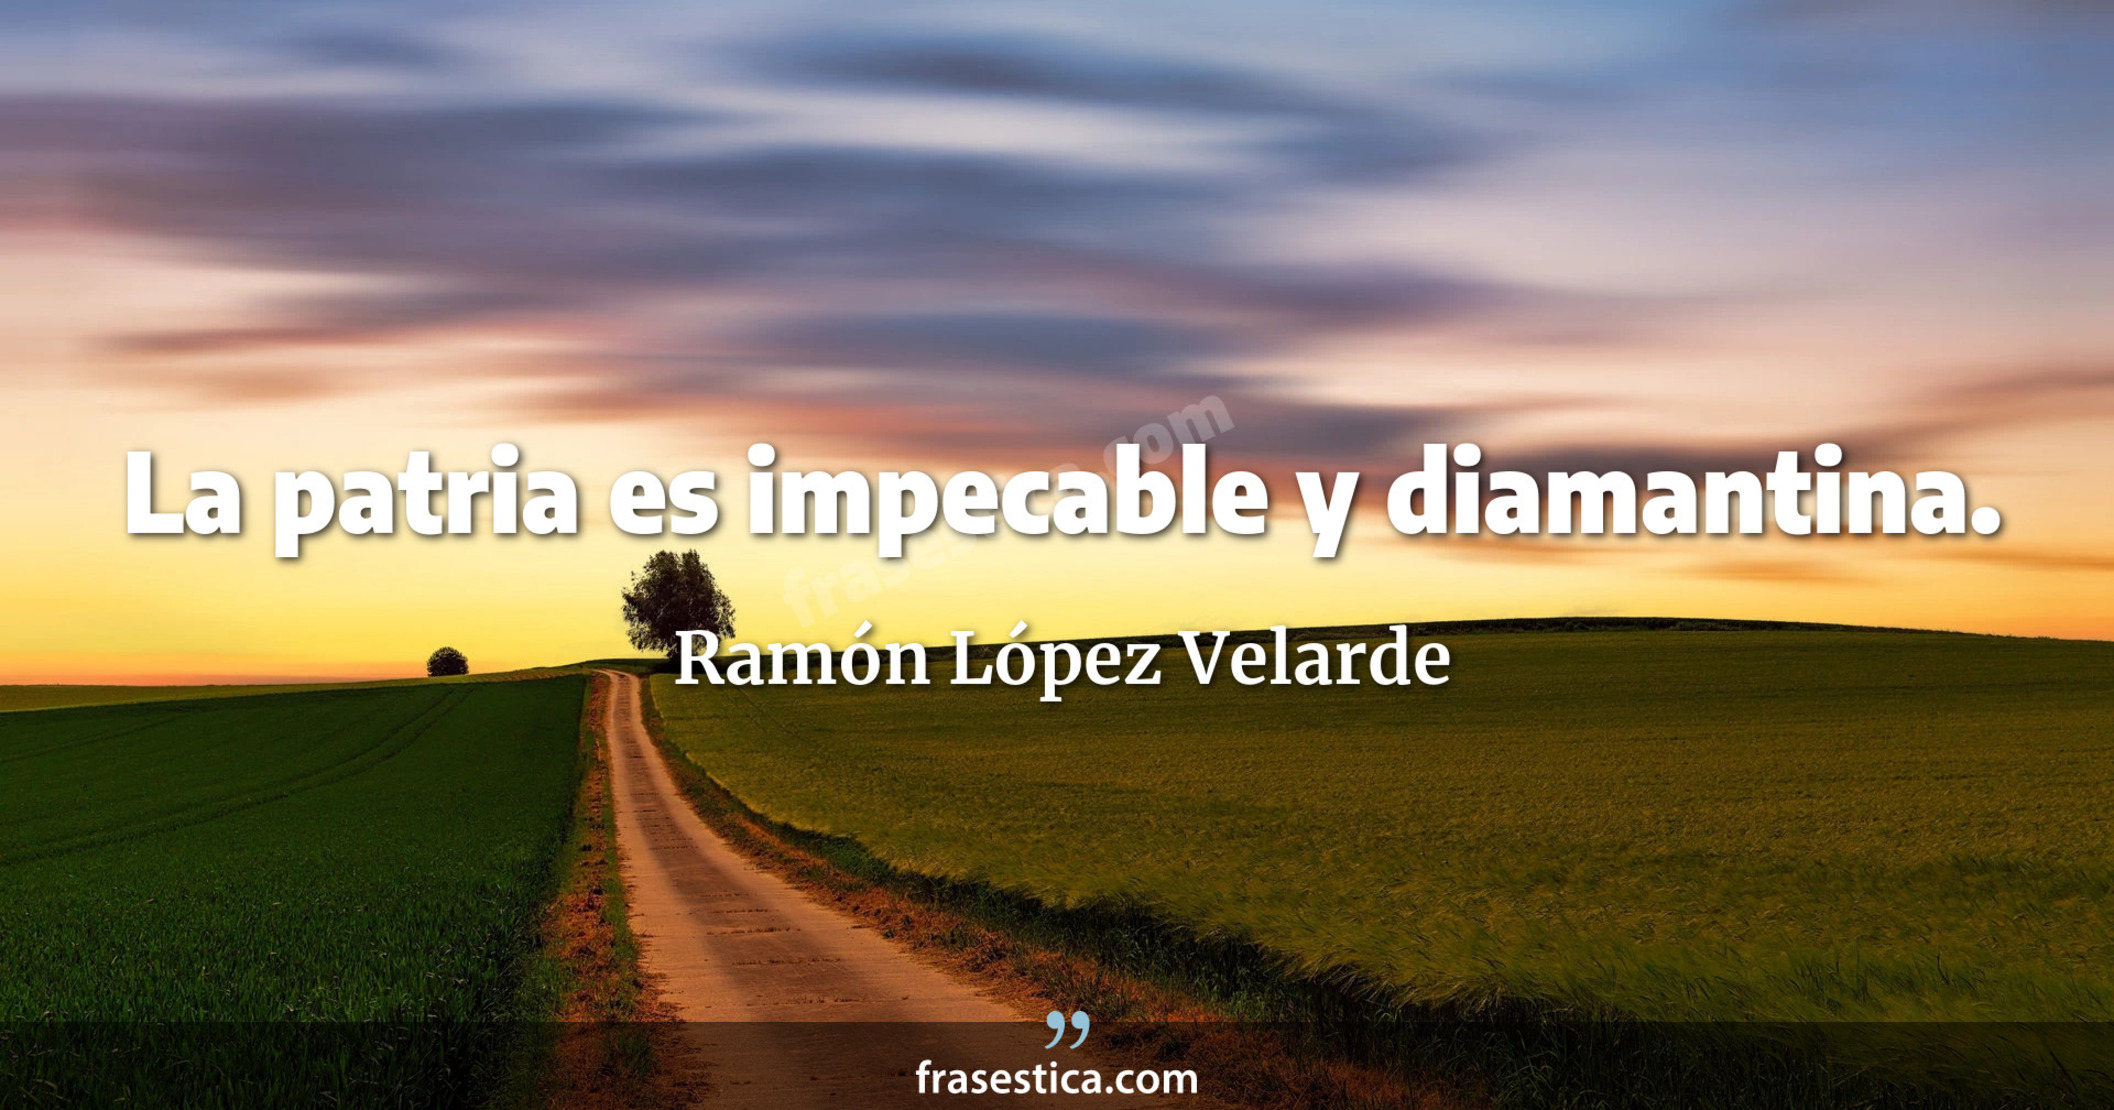 La patria es impecable y diamantina. - Ramón López Velarde